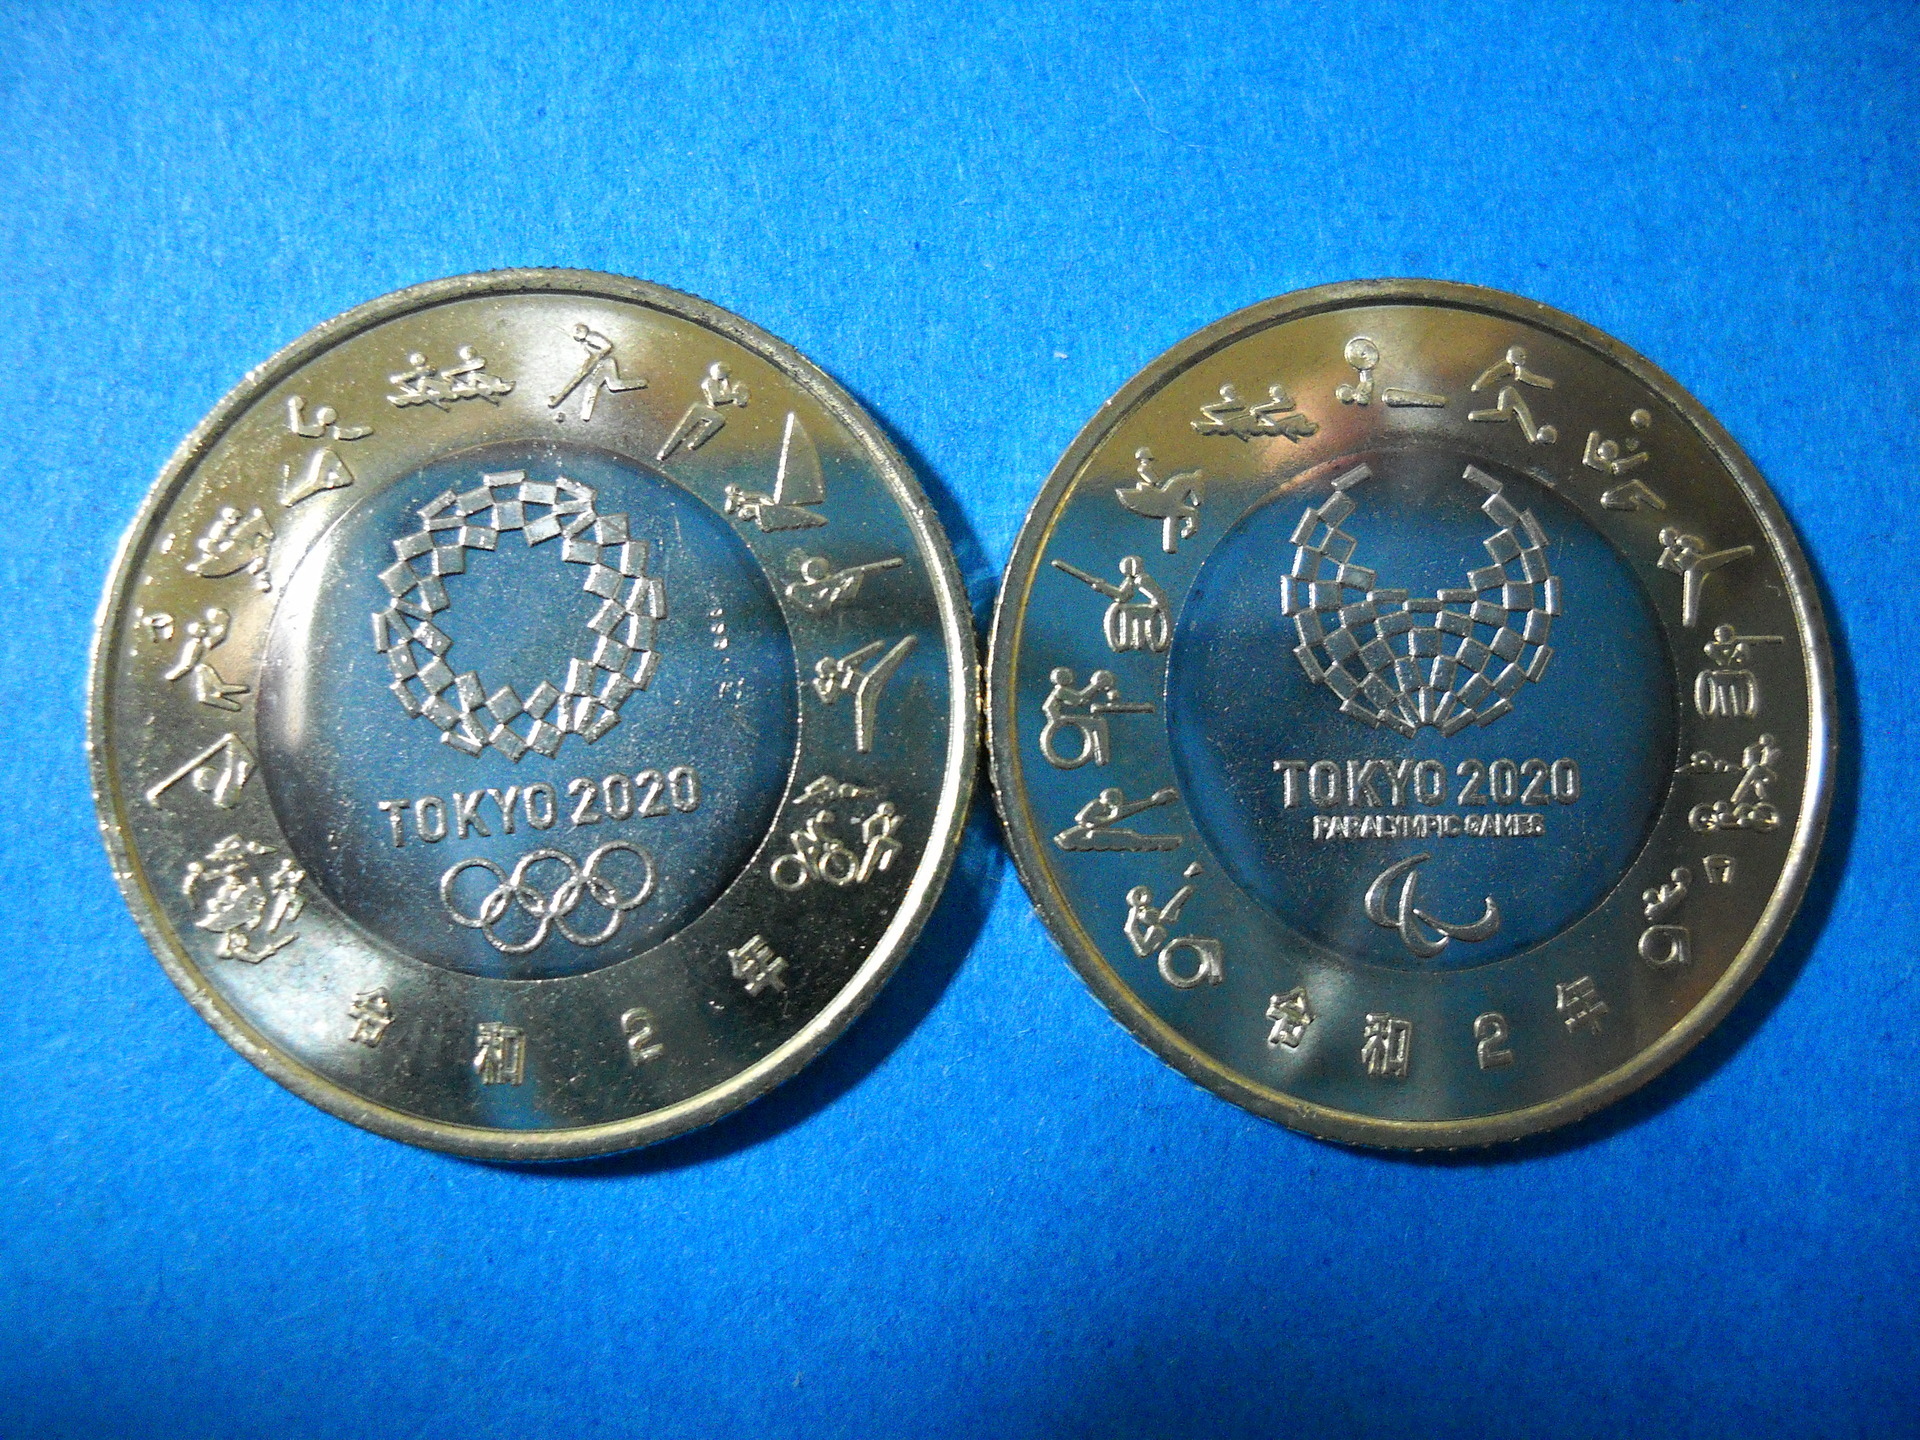 コレクションの記載: 2020 東京オリンピック・パラリンピック記念 雷神・風神 500円硬貨